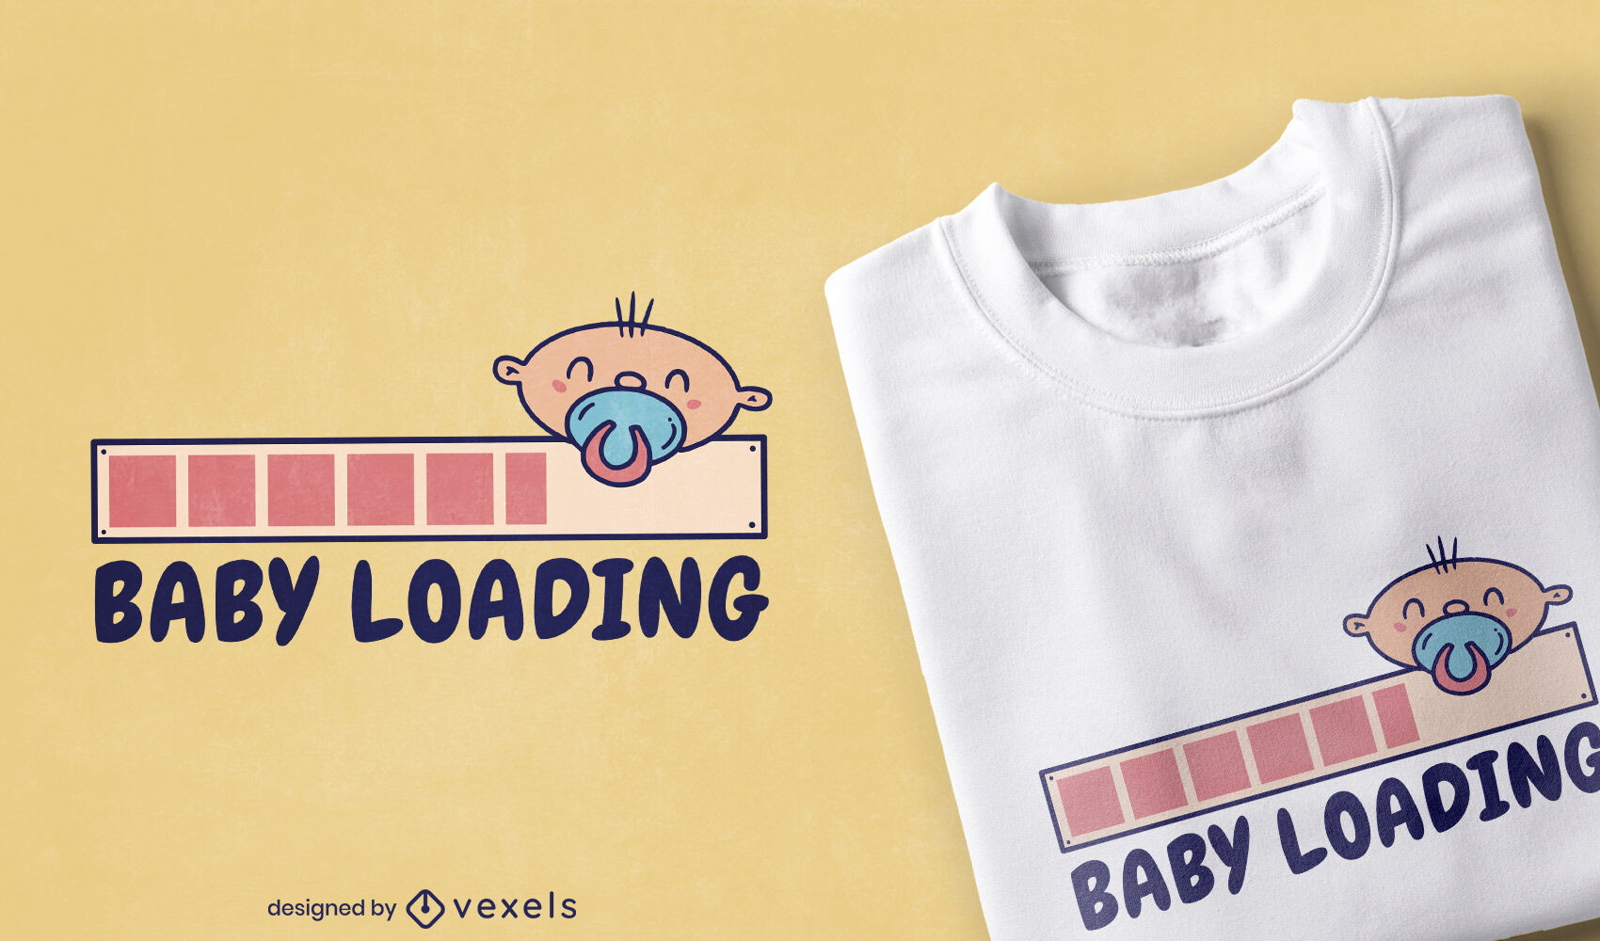 Dise?o divertido de la camiseta de la barra de carga del beb?